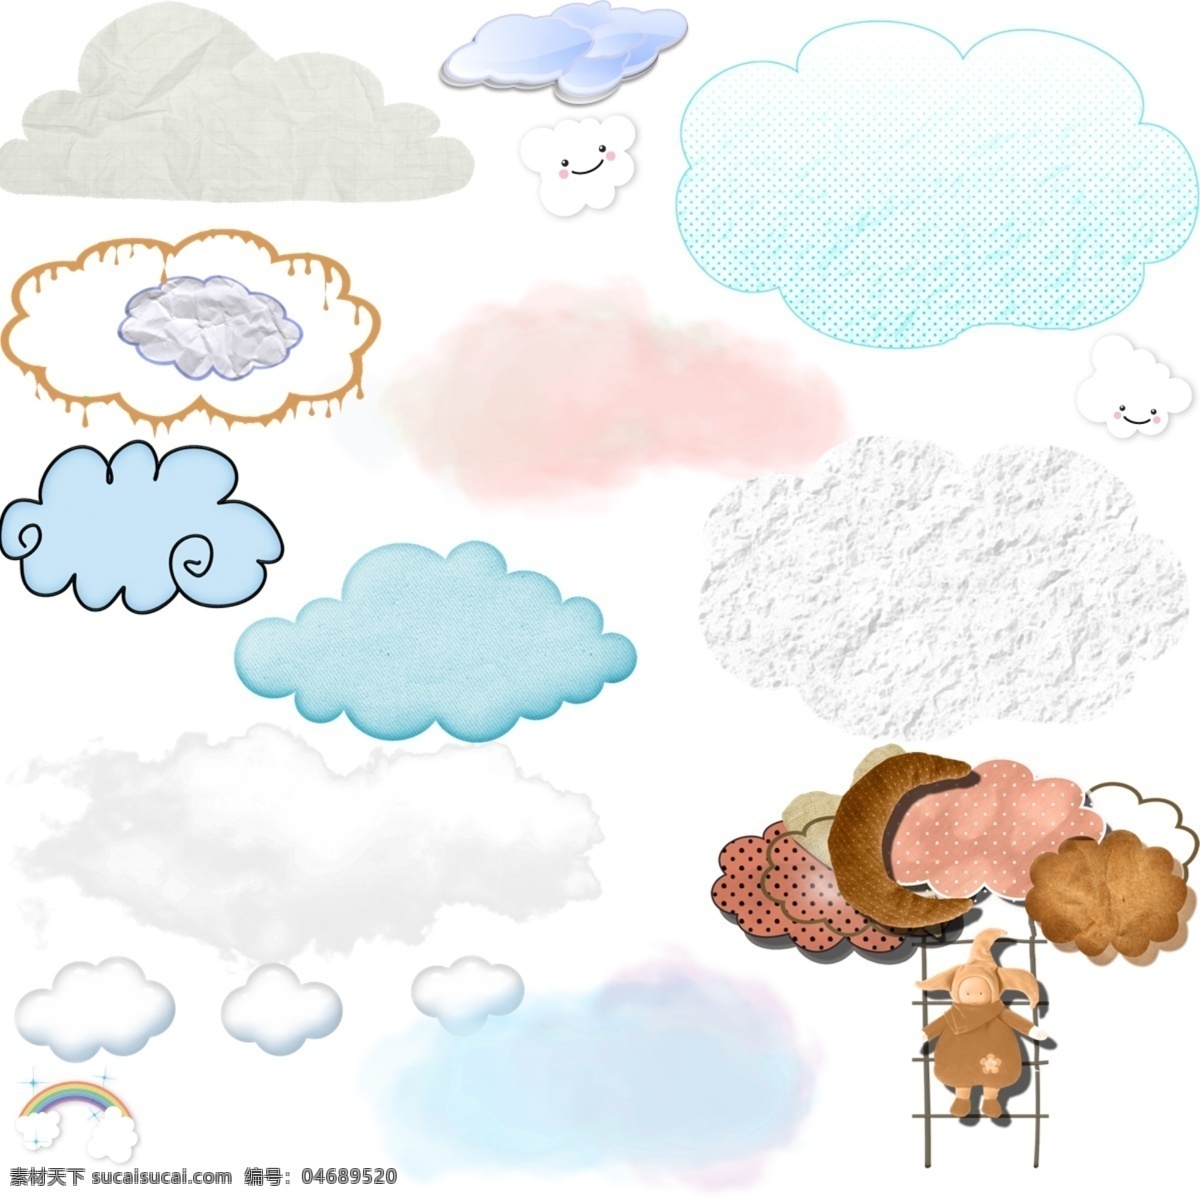 云朵 幼儿素材 云朵素材下载 云朵模板下载 白云飘飘 云彩 太阳 可爱笑脸云朵 分层 源文件